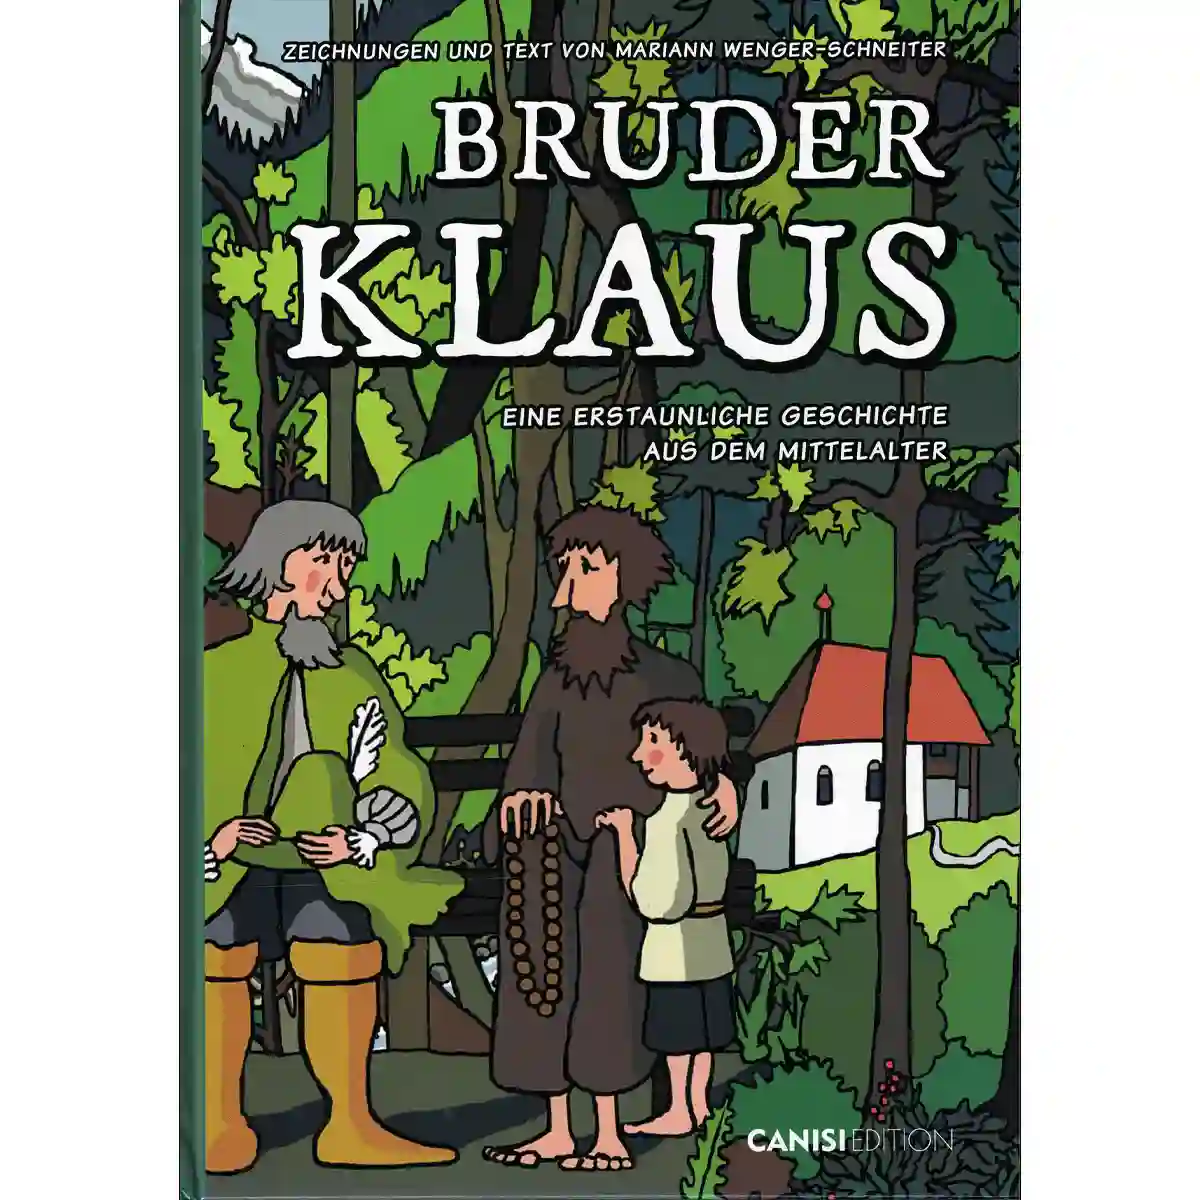 Bruder Klaus – Eine erstaunliche Geschichte aus dem Mittelalter